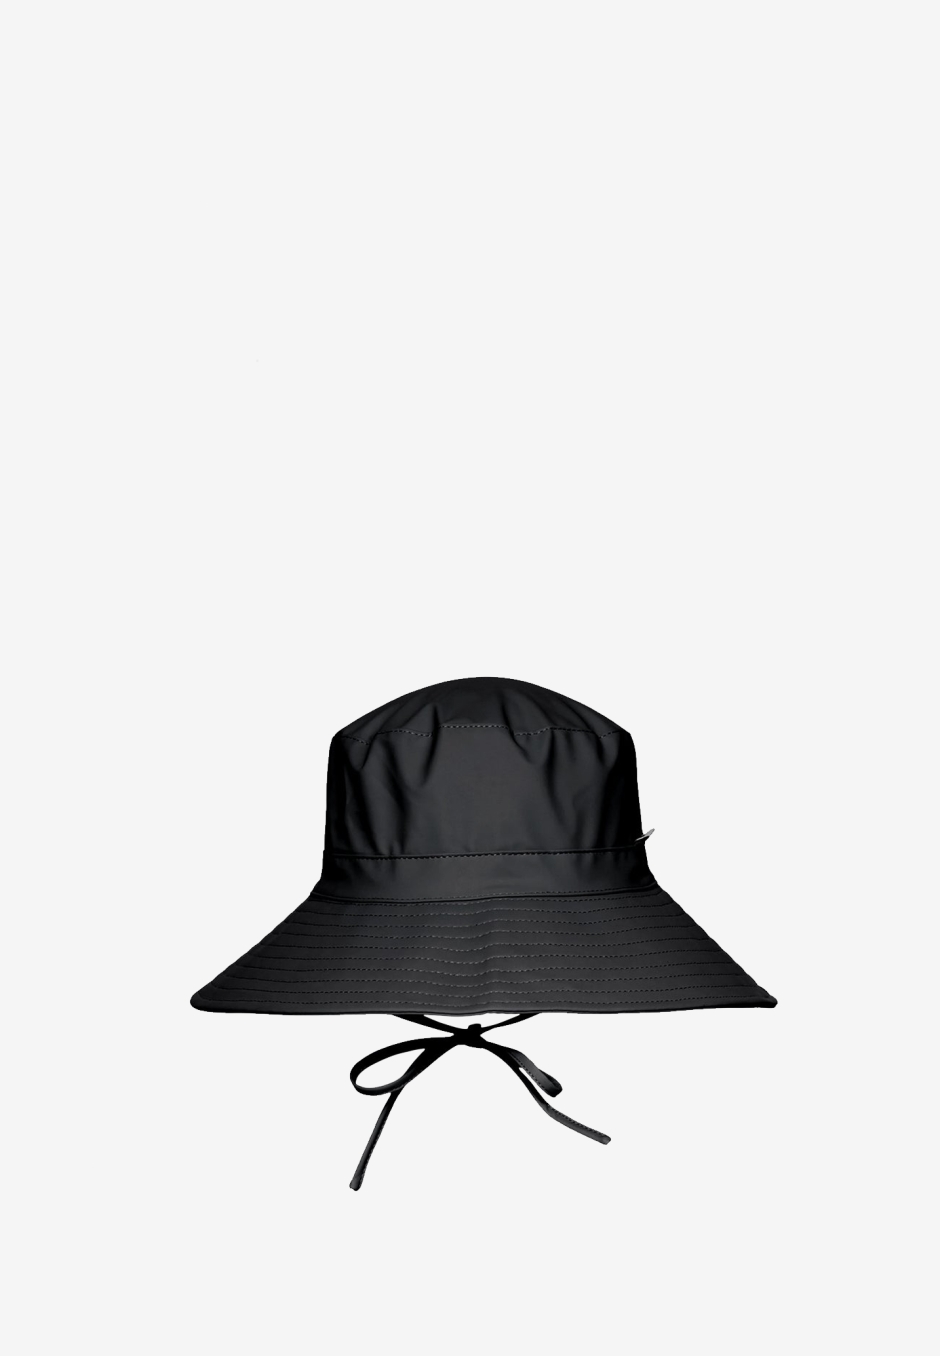 Rains Boonie Hat Black